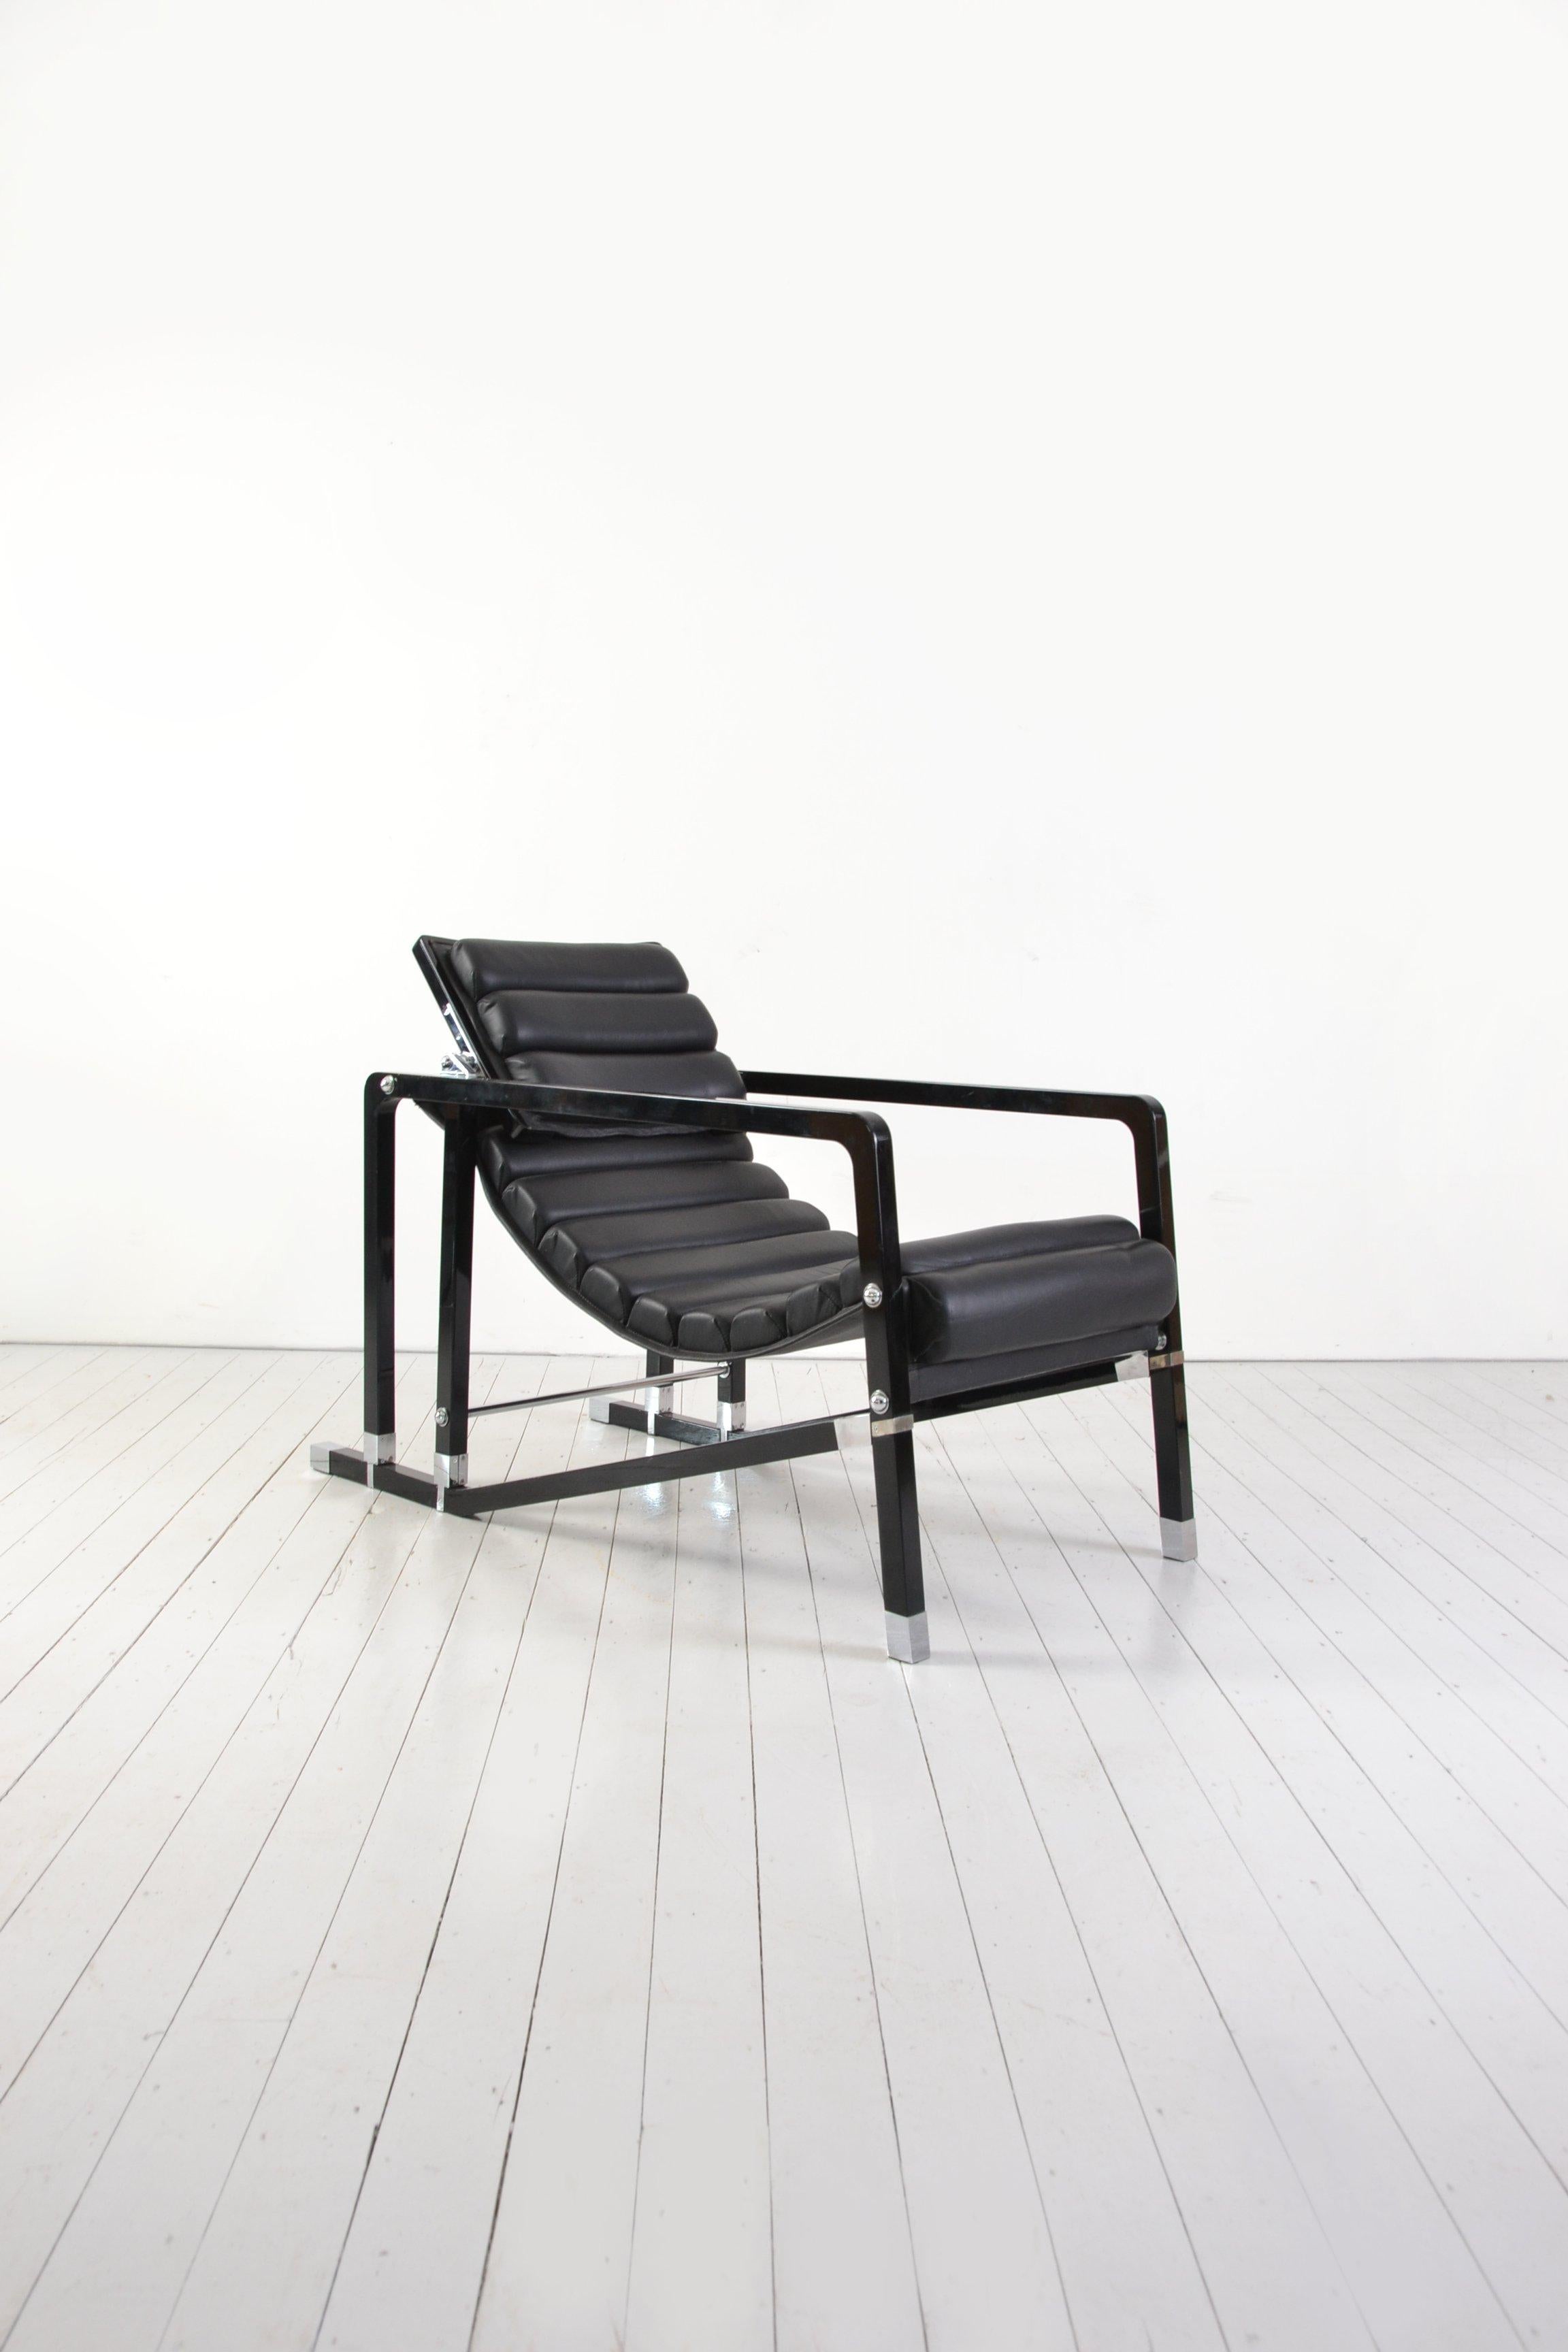 Wood Eileen Gray Transat Chair Edition by Ecart Int.